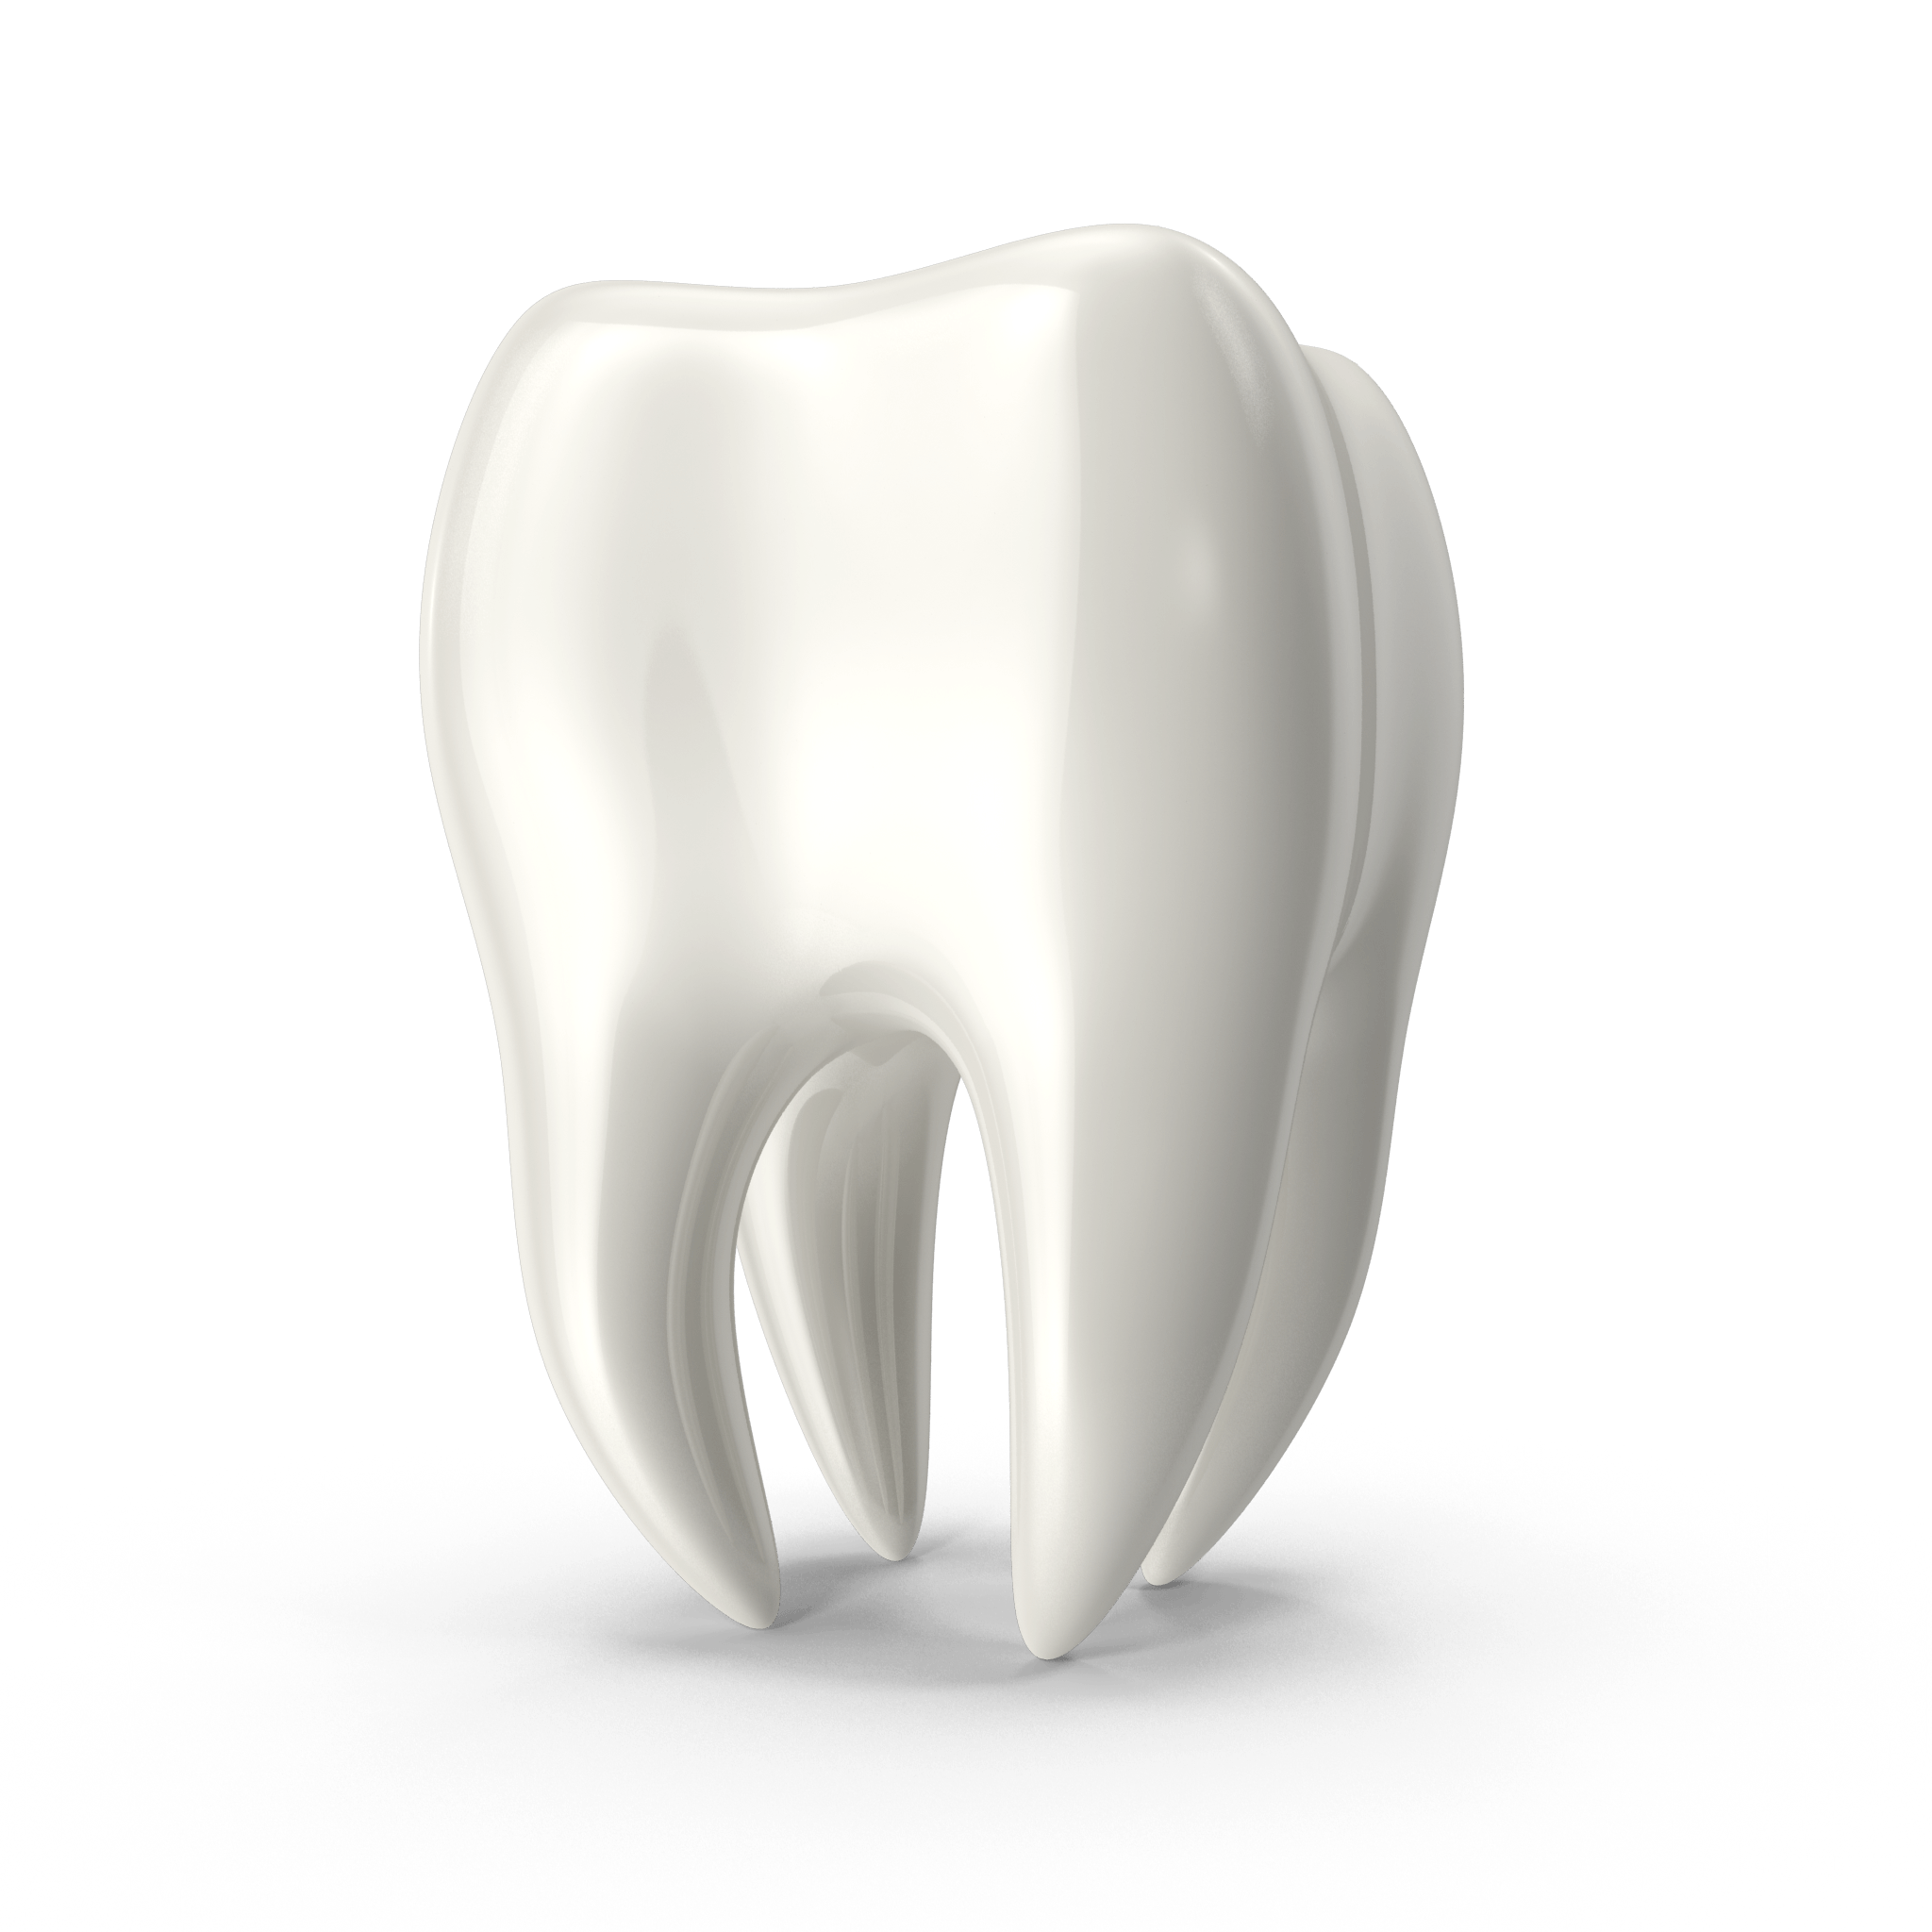 invisalign set of teeth